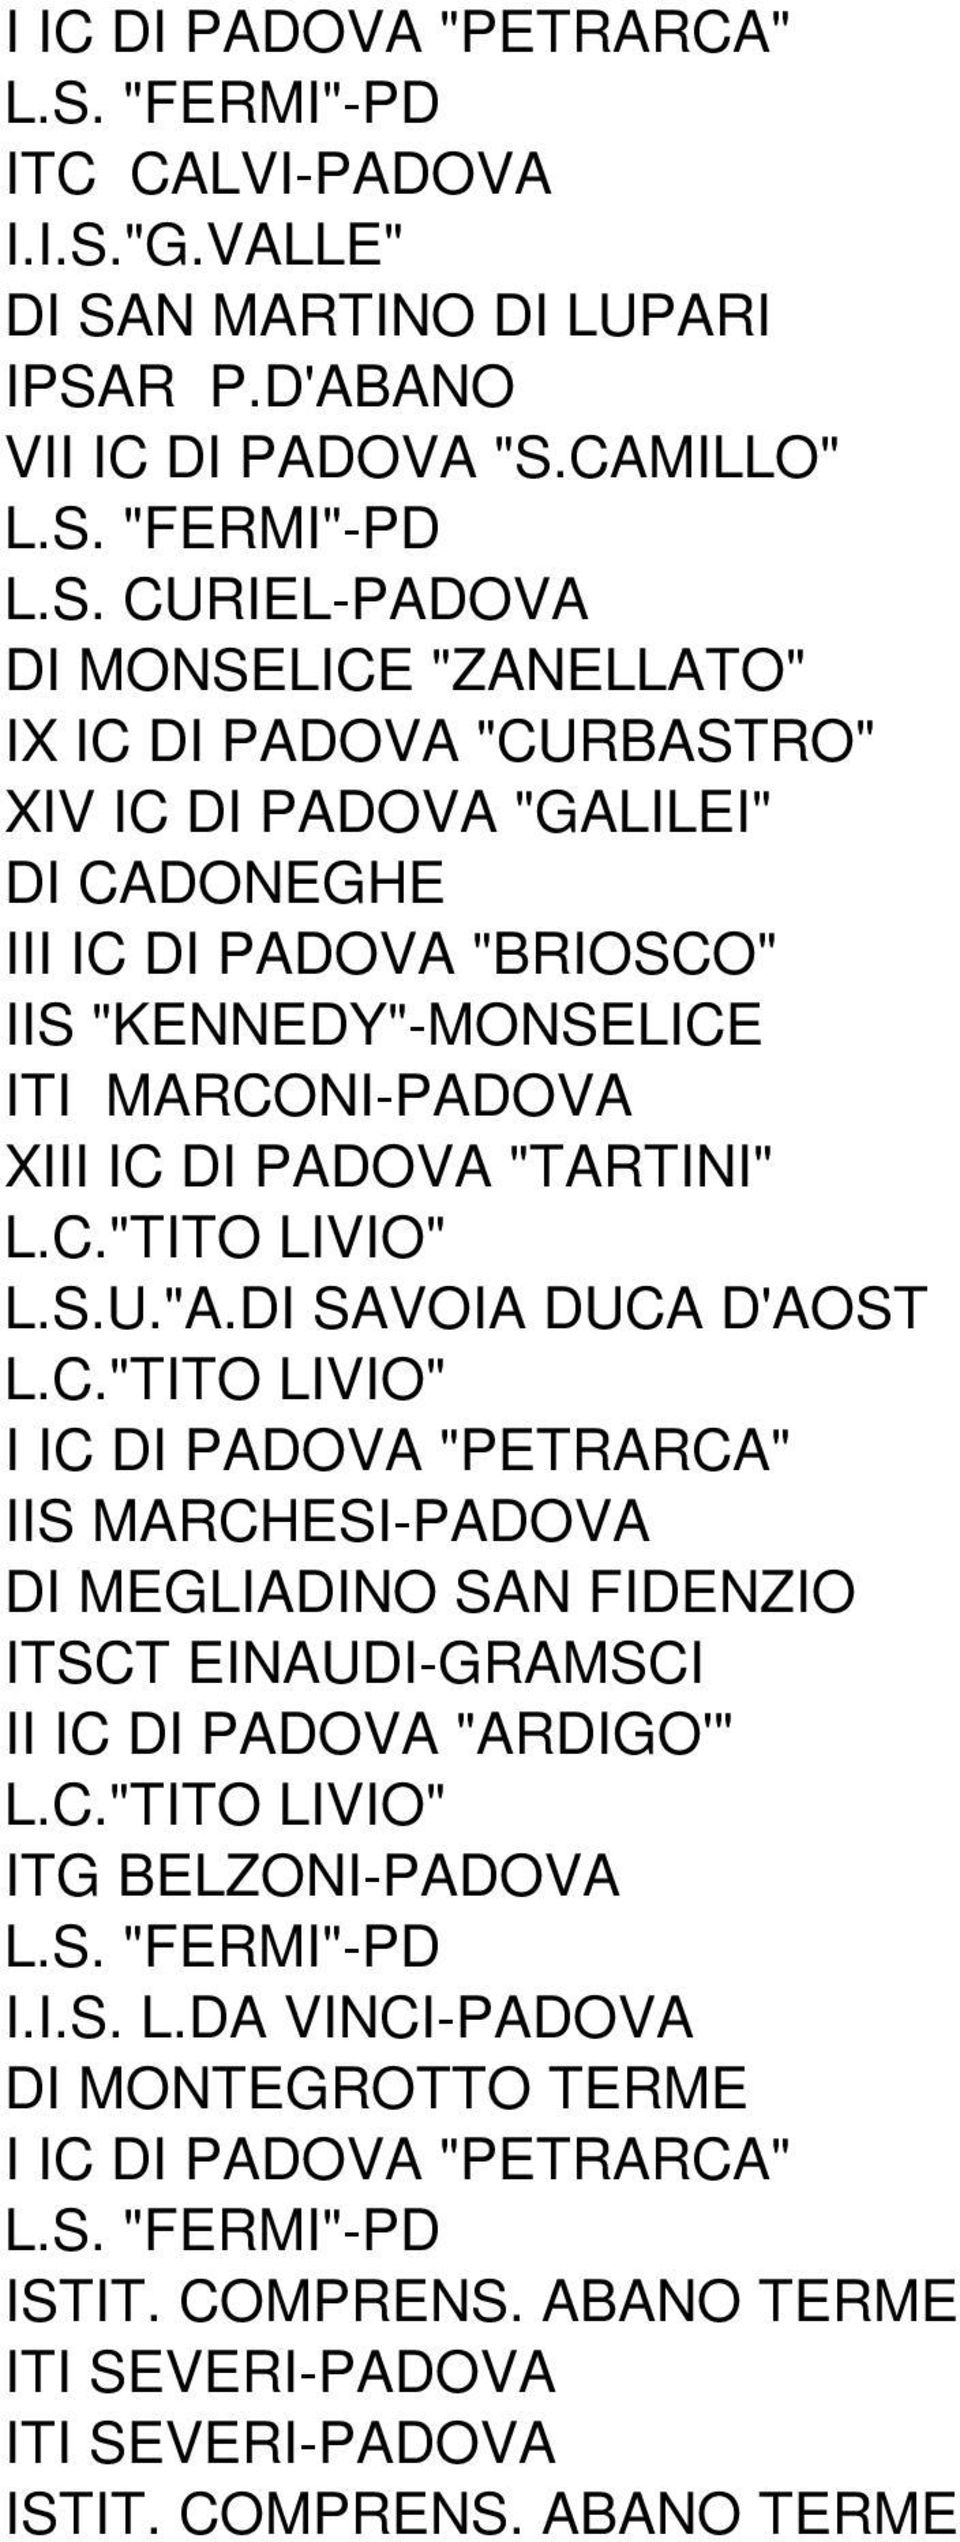 "KENNEDY"-MONSELICE ITI MARCONI-PADOVA XIII IC DI PADOVA "TARTINI" L.S.U."A.